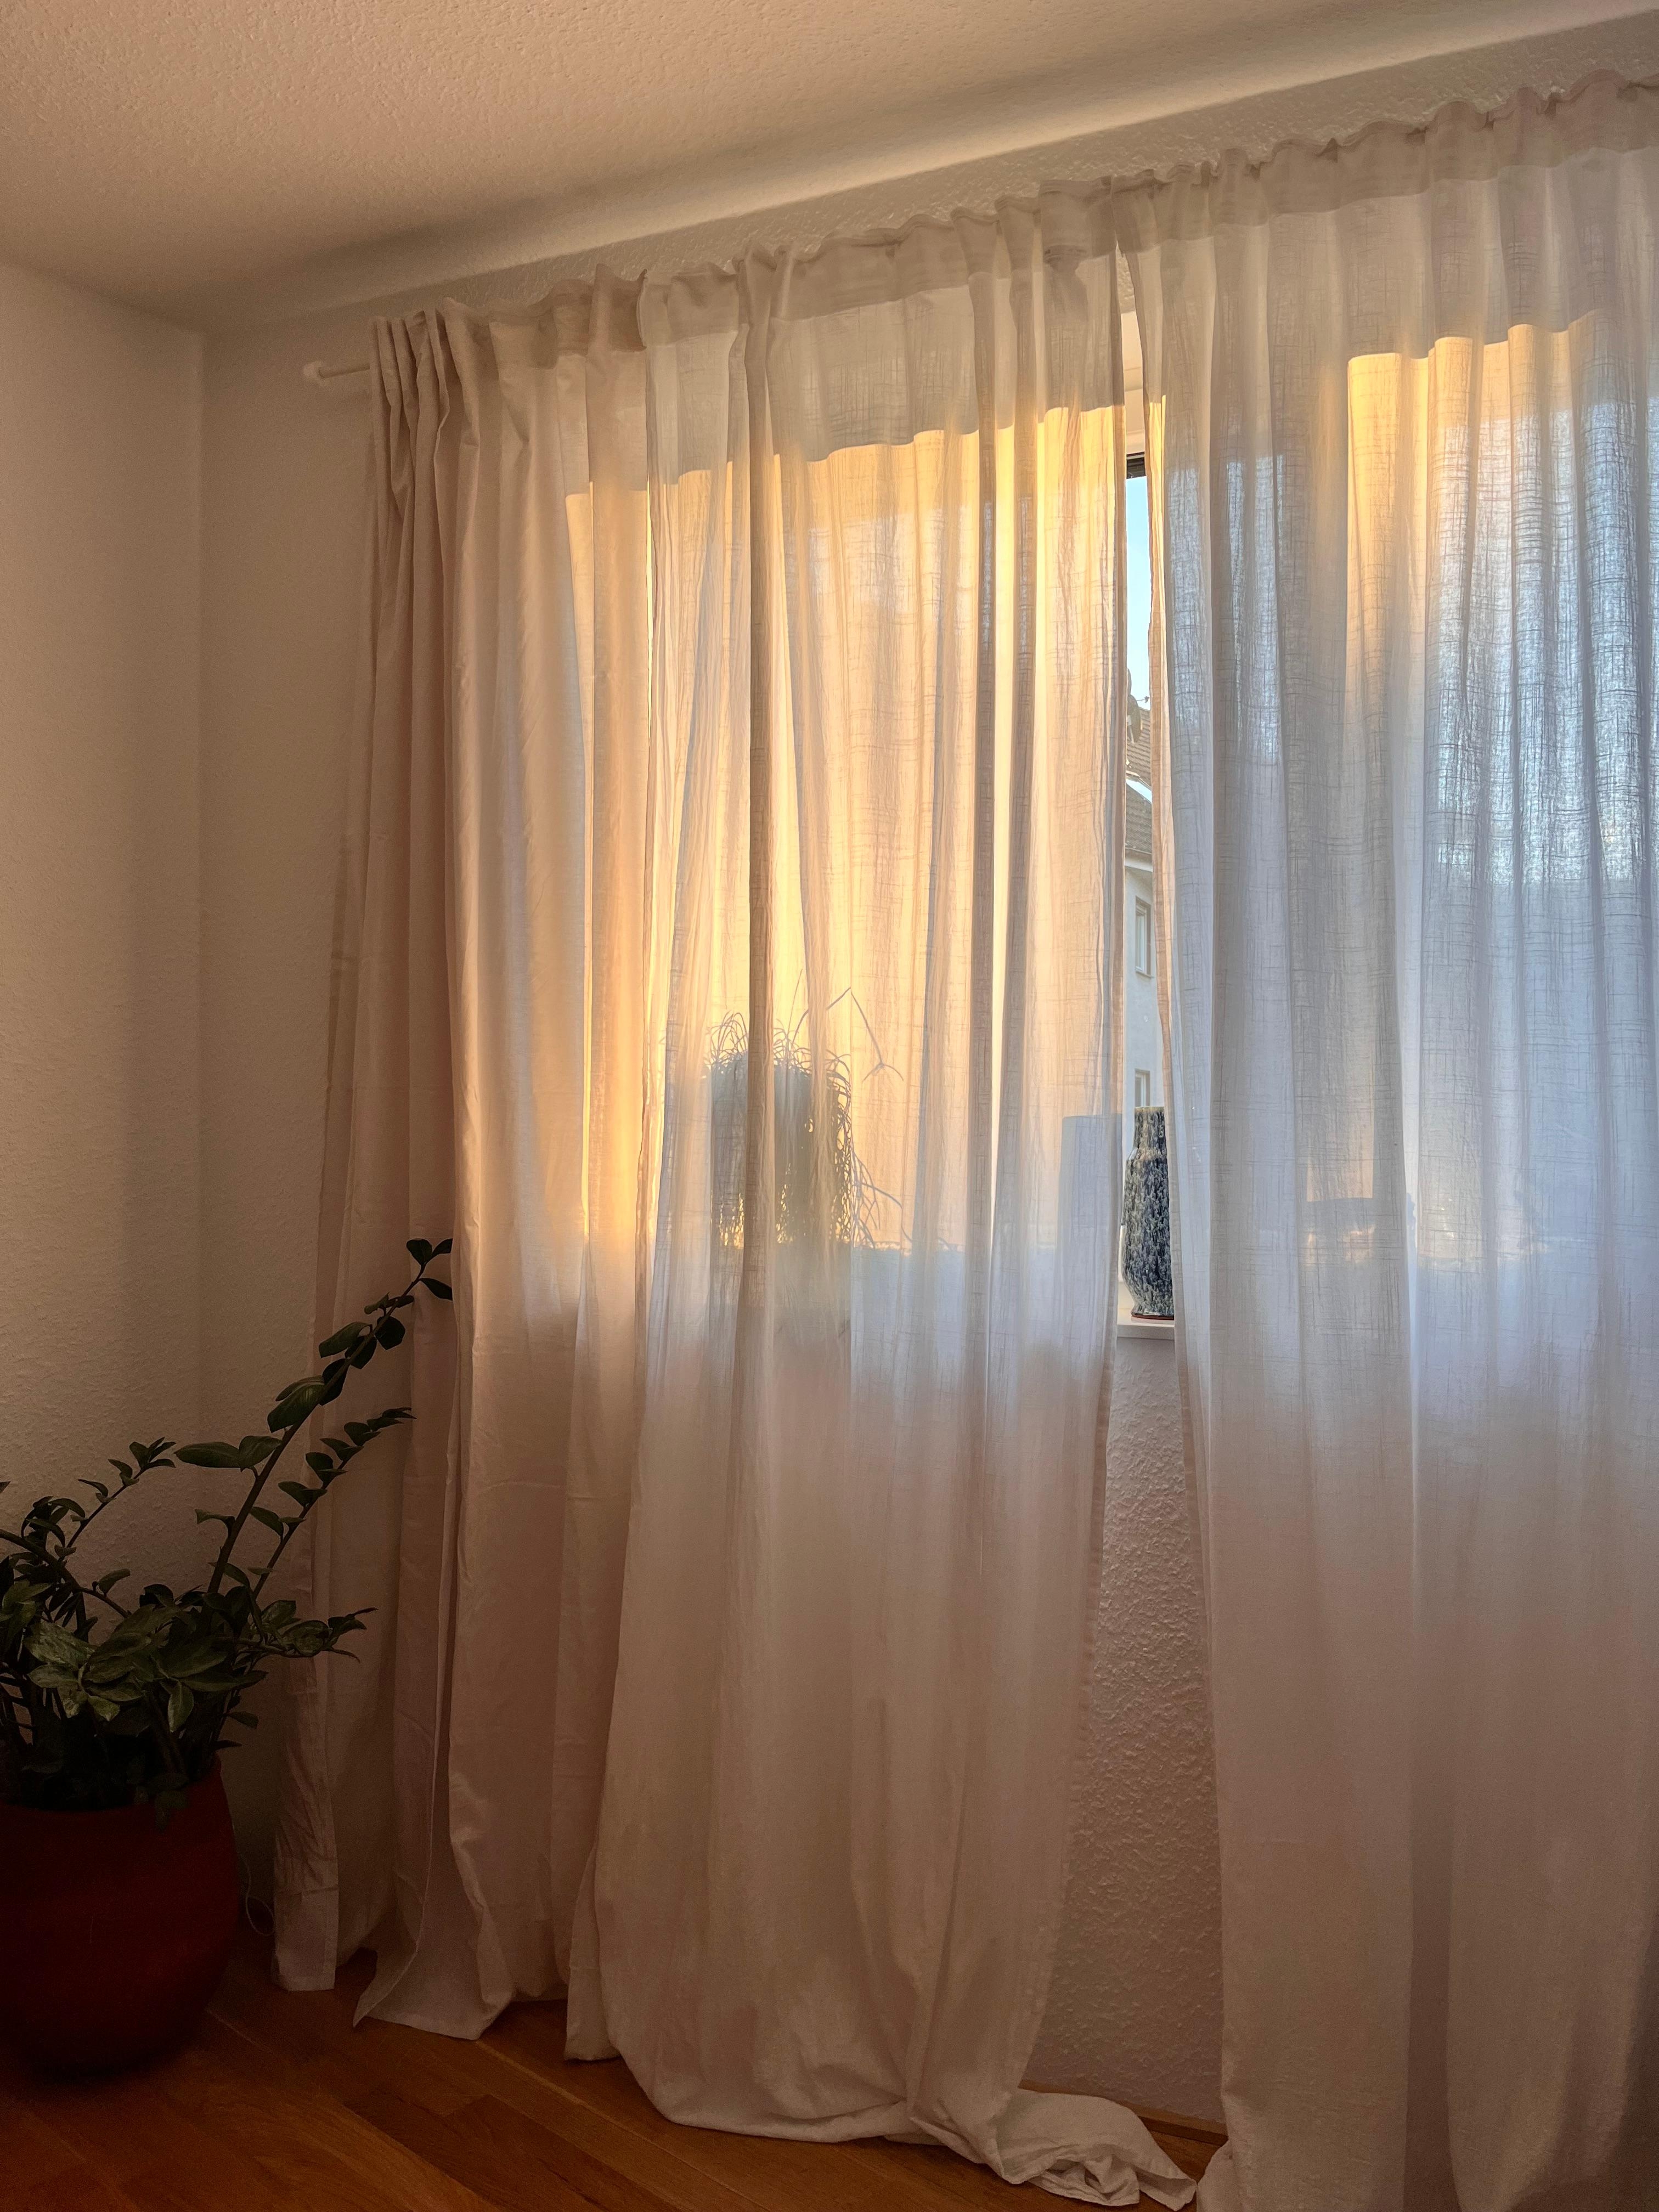 Morning lights ☀️
#morningsun #bedroom #curtains